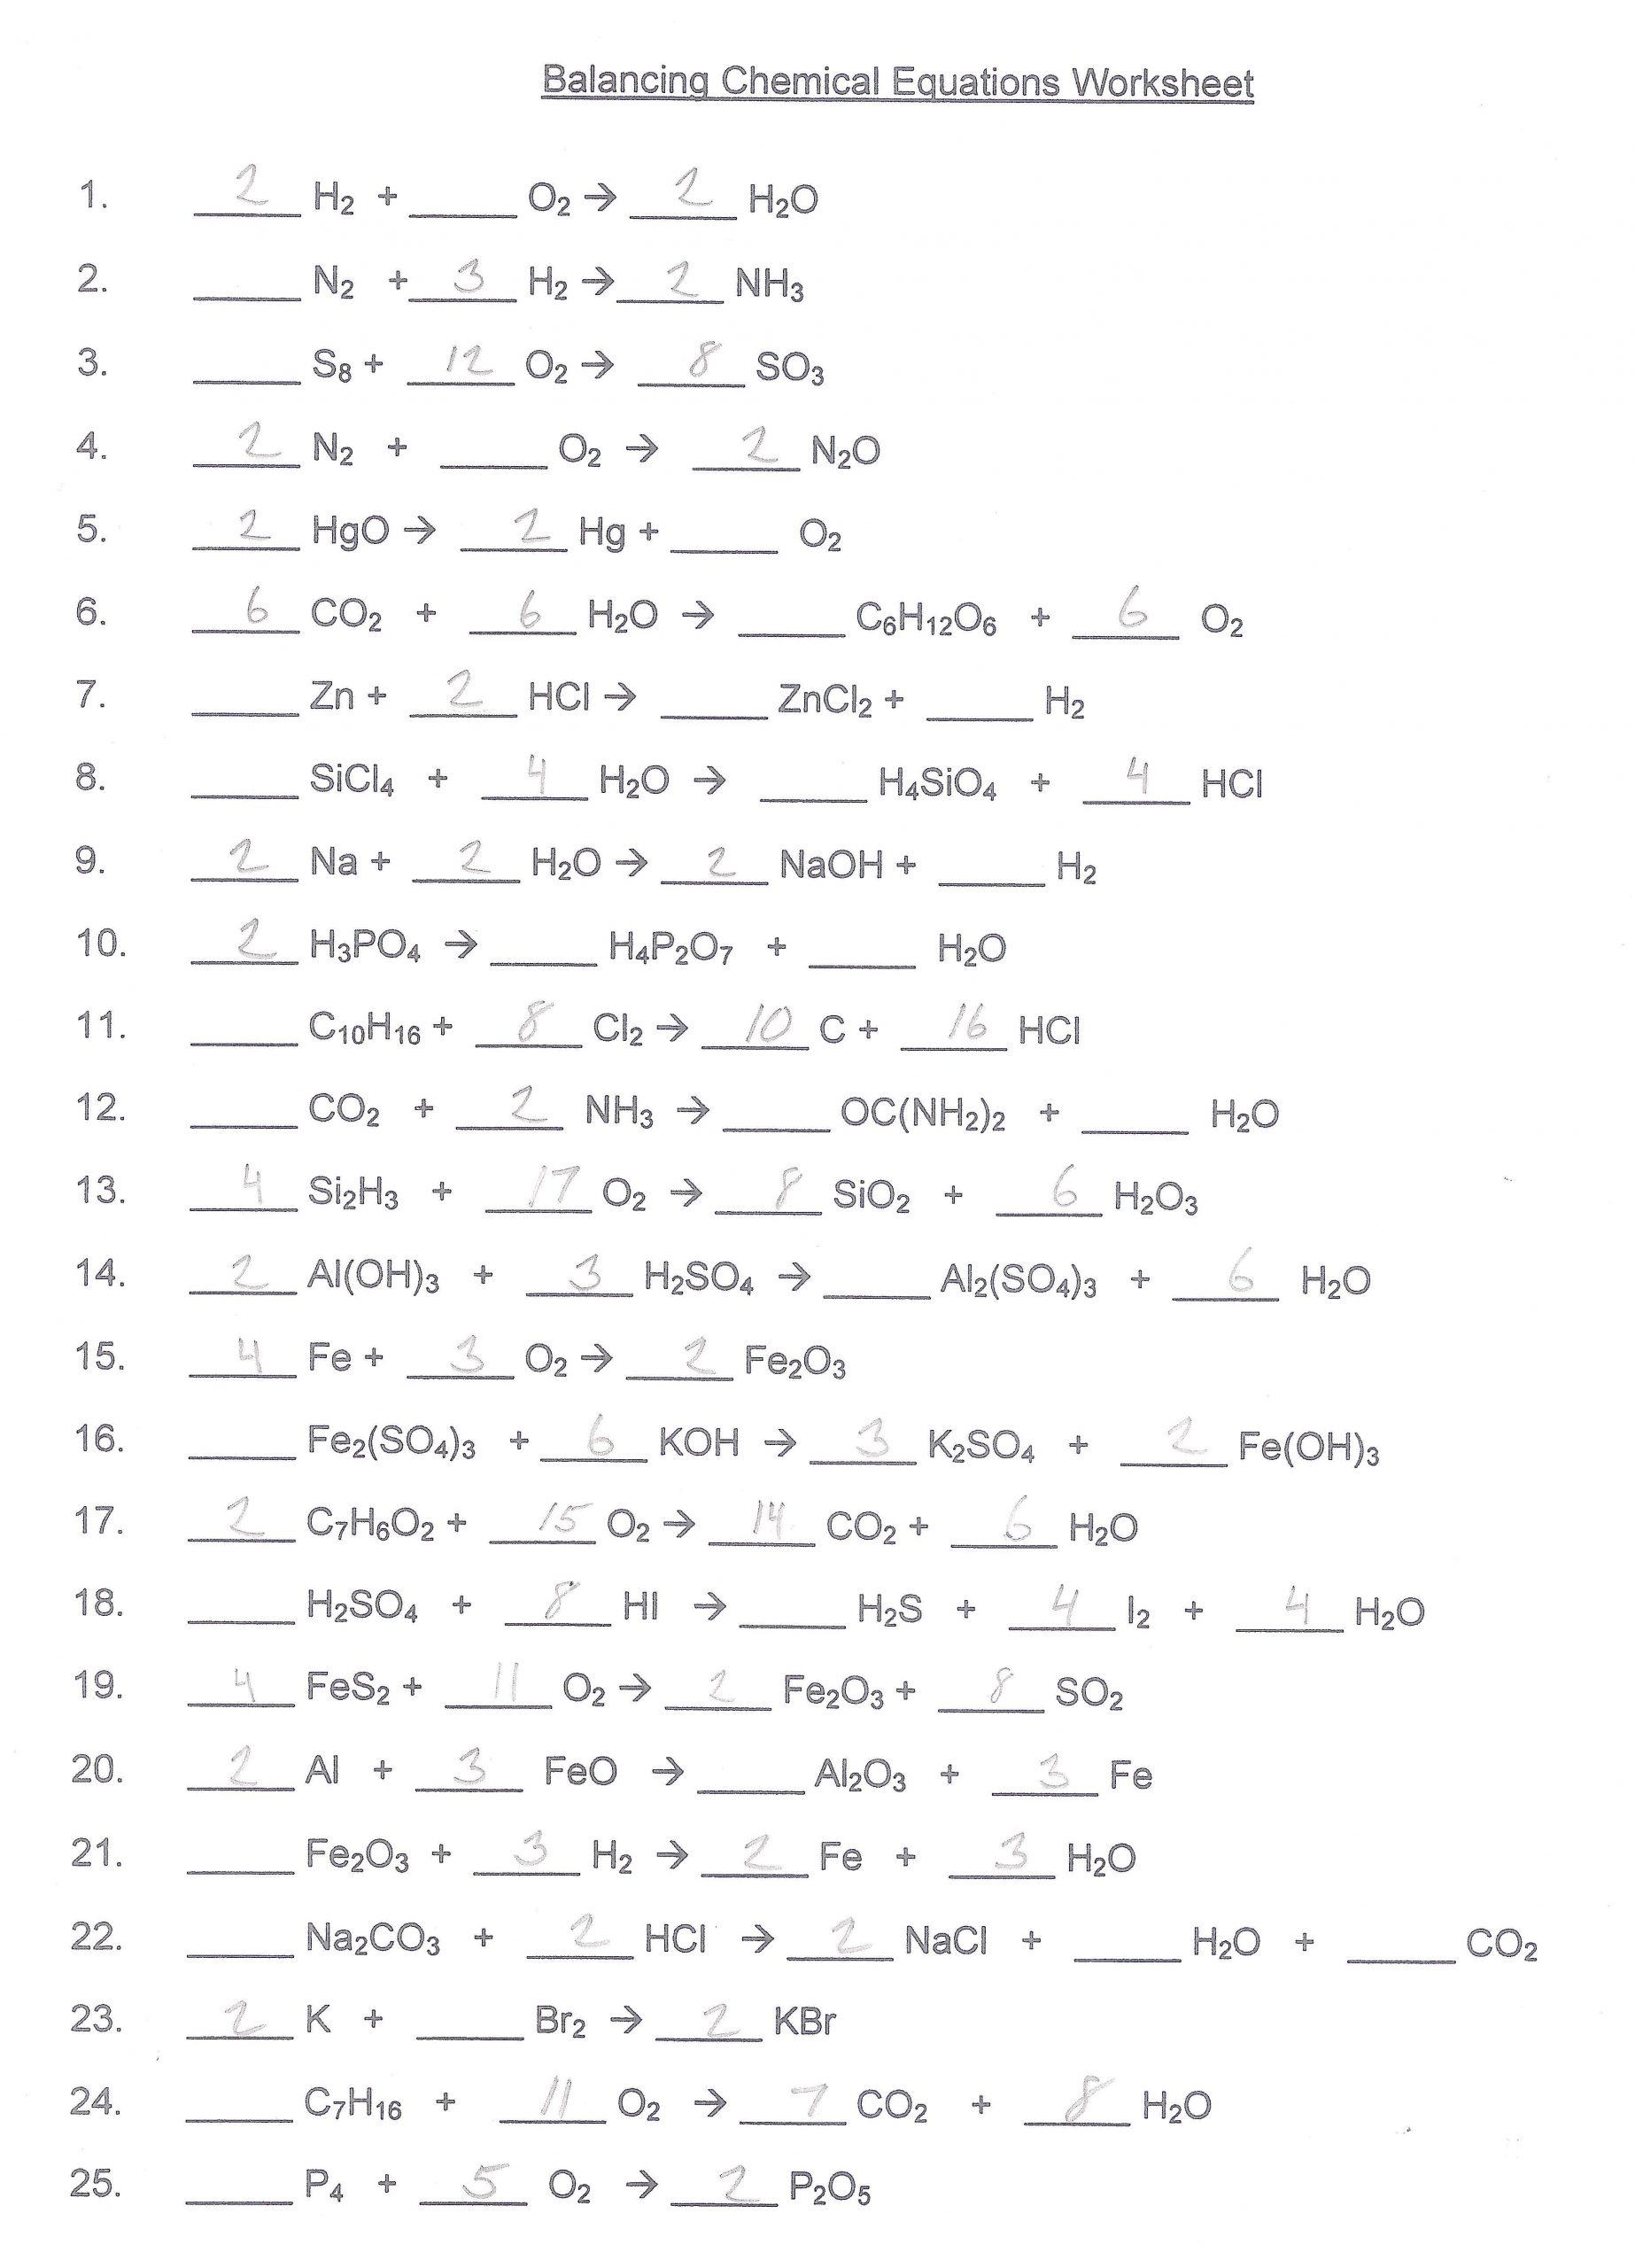 Balancing Equations Worksheet Answer Key Balancing Chemical Equations Worksheet Answer Key